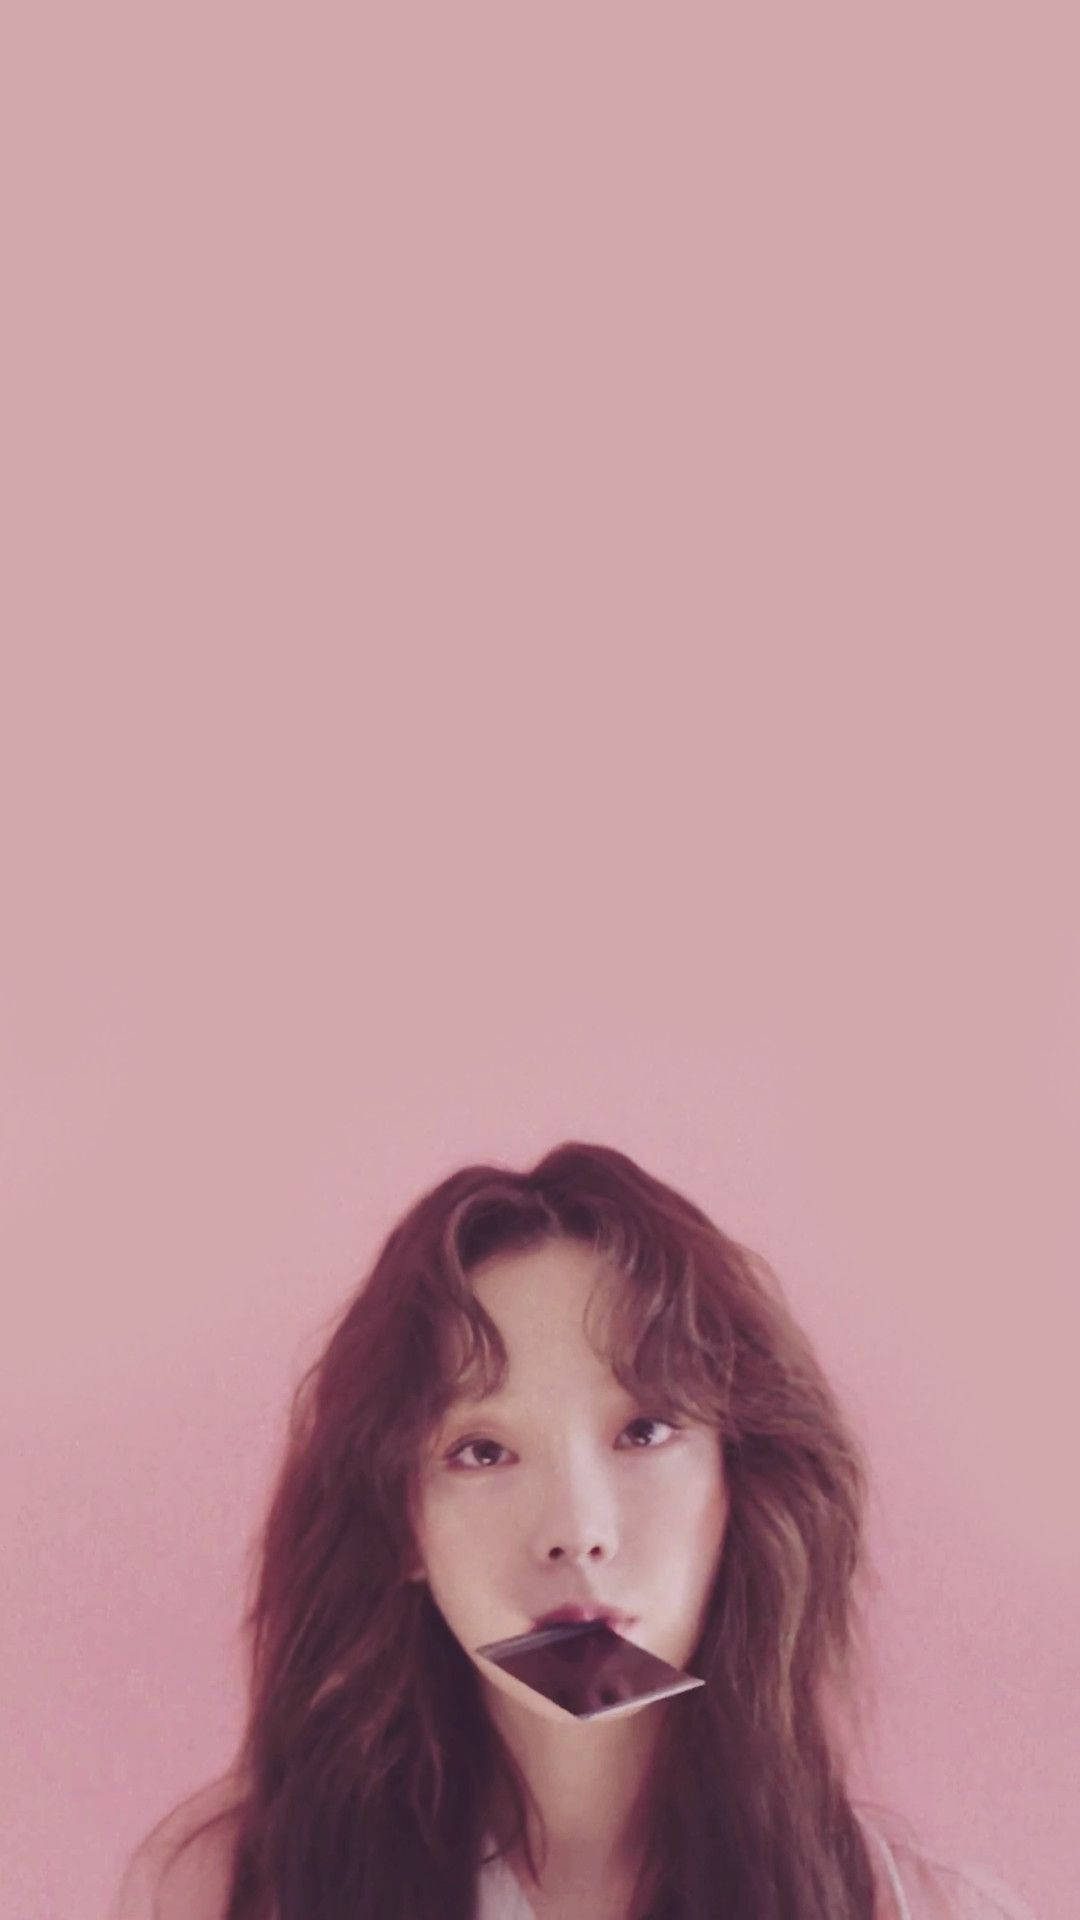 Taeyeonmordiendo Una Polaroid. Fondo de pantalla